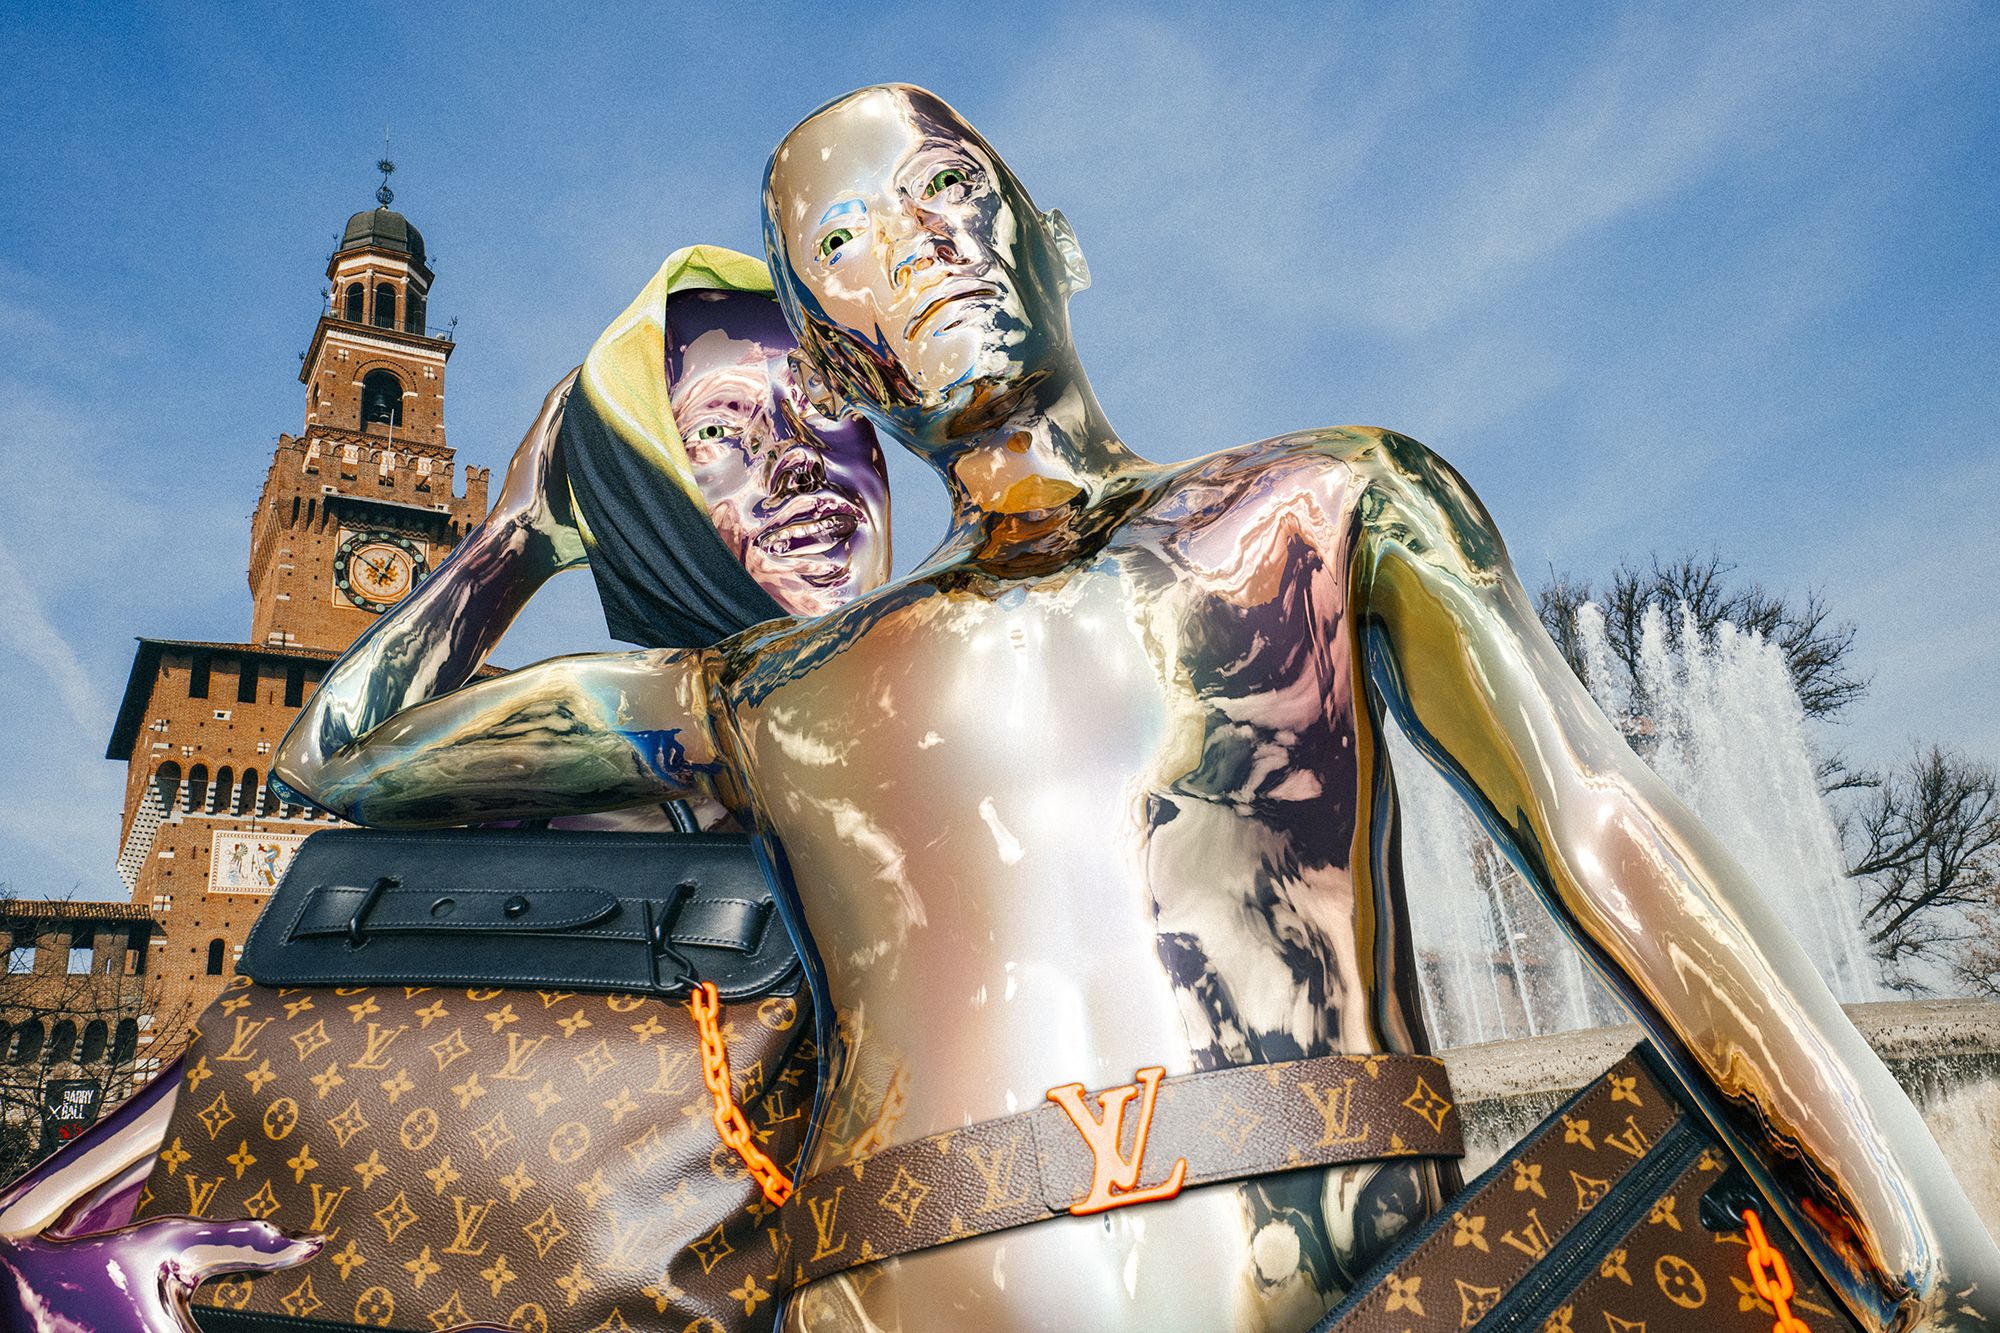 Humanoids land in Milan with Louis Vuitton